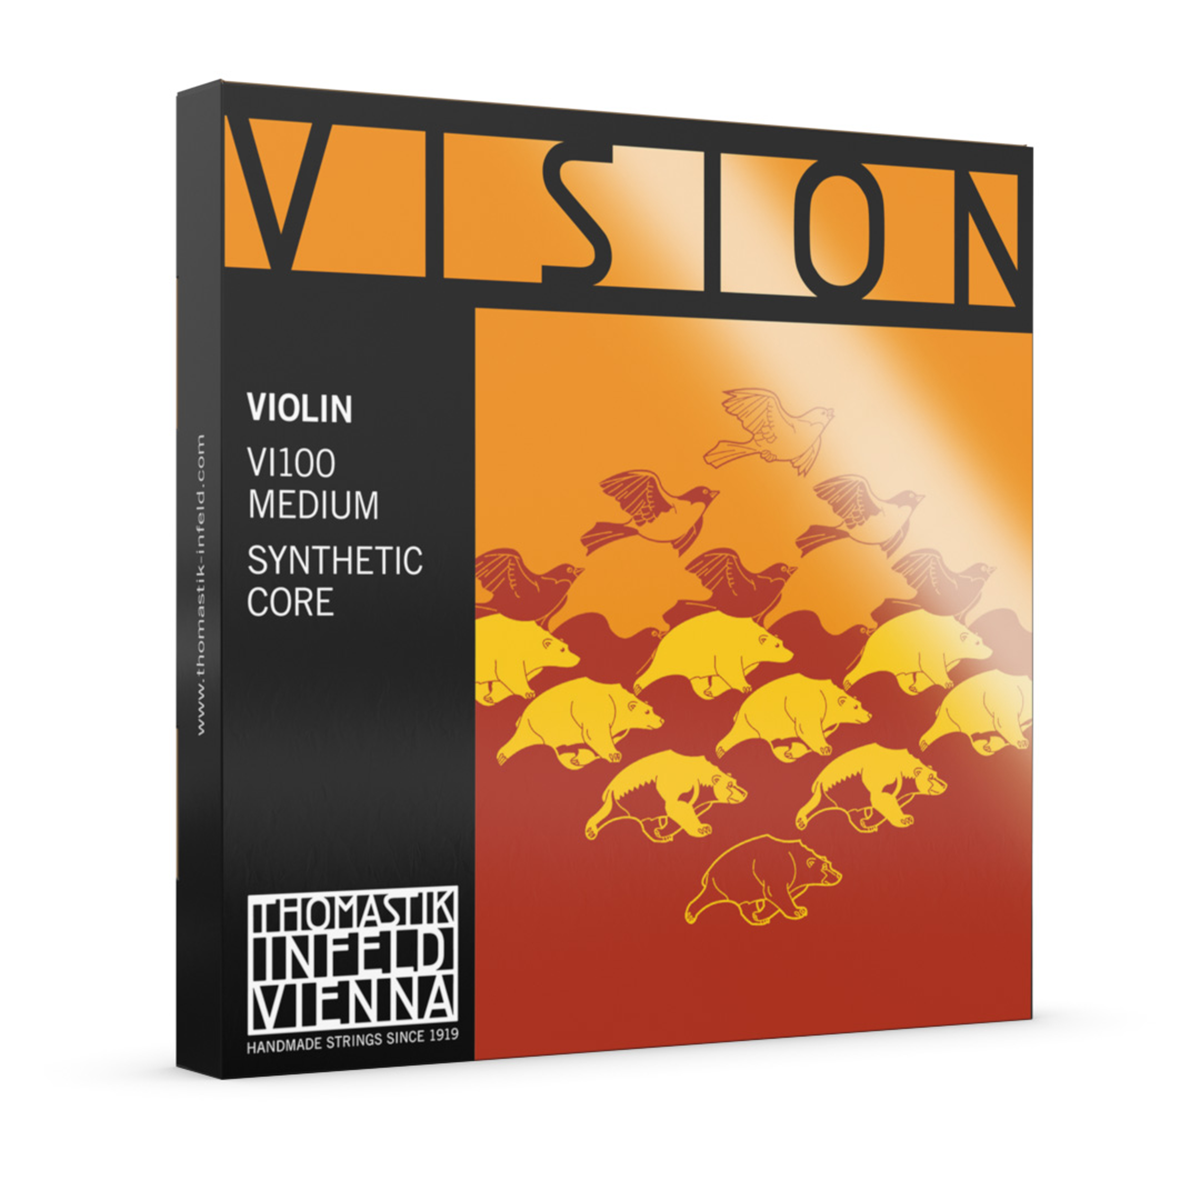 Thomastik Vision Violin String Medium Synthetic Core Set